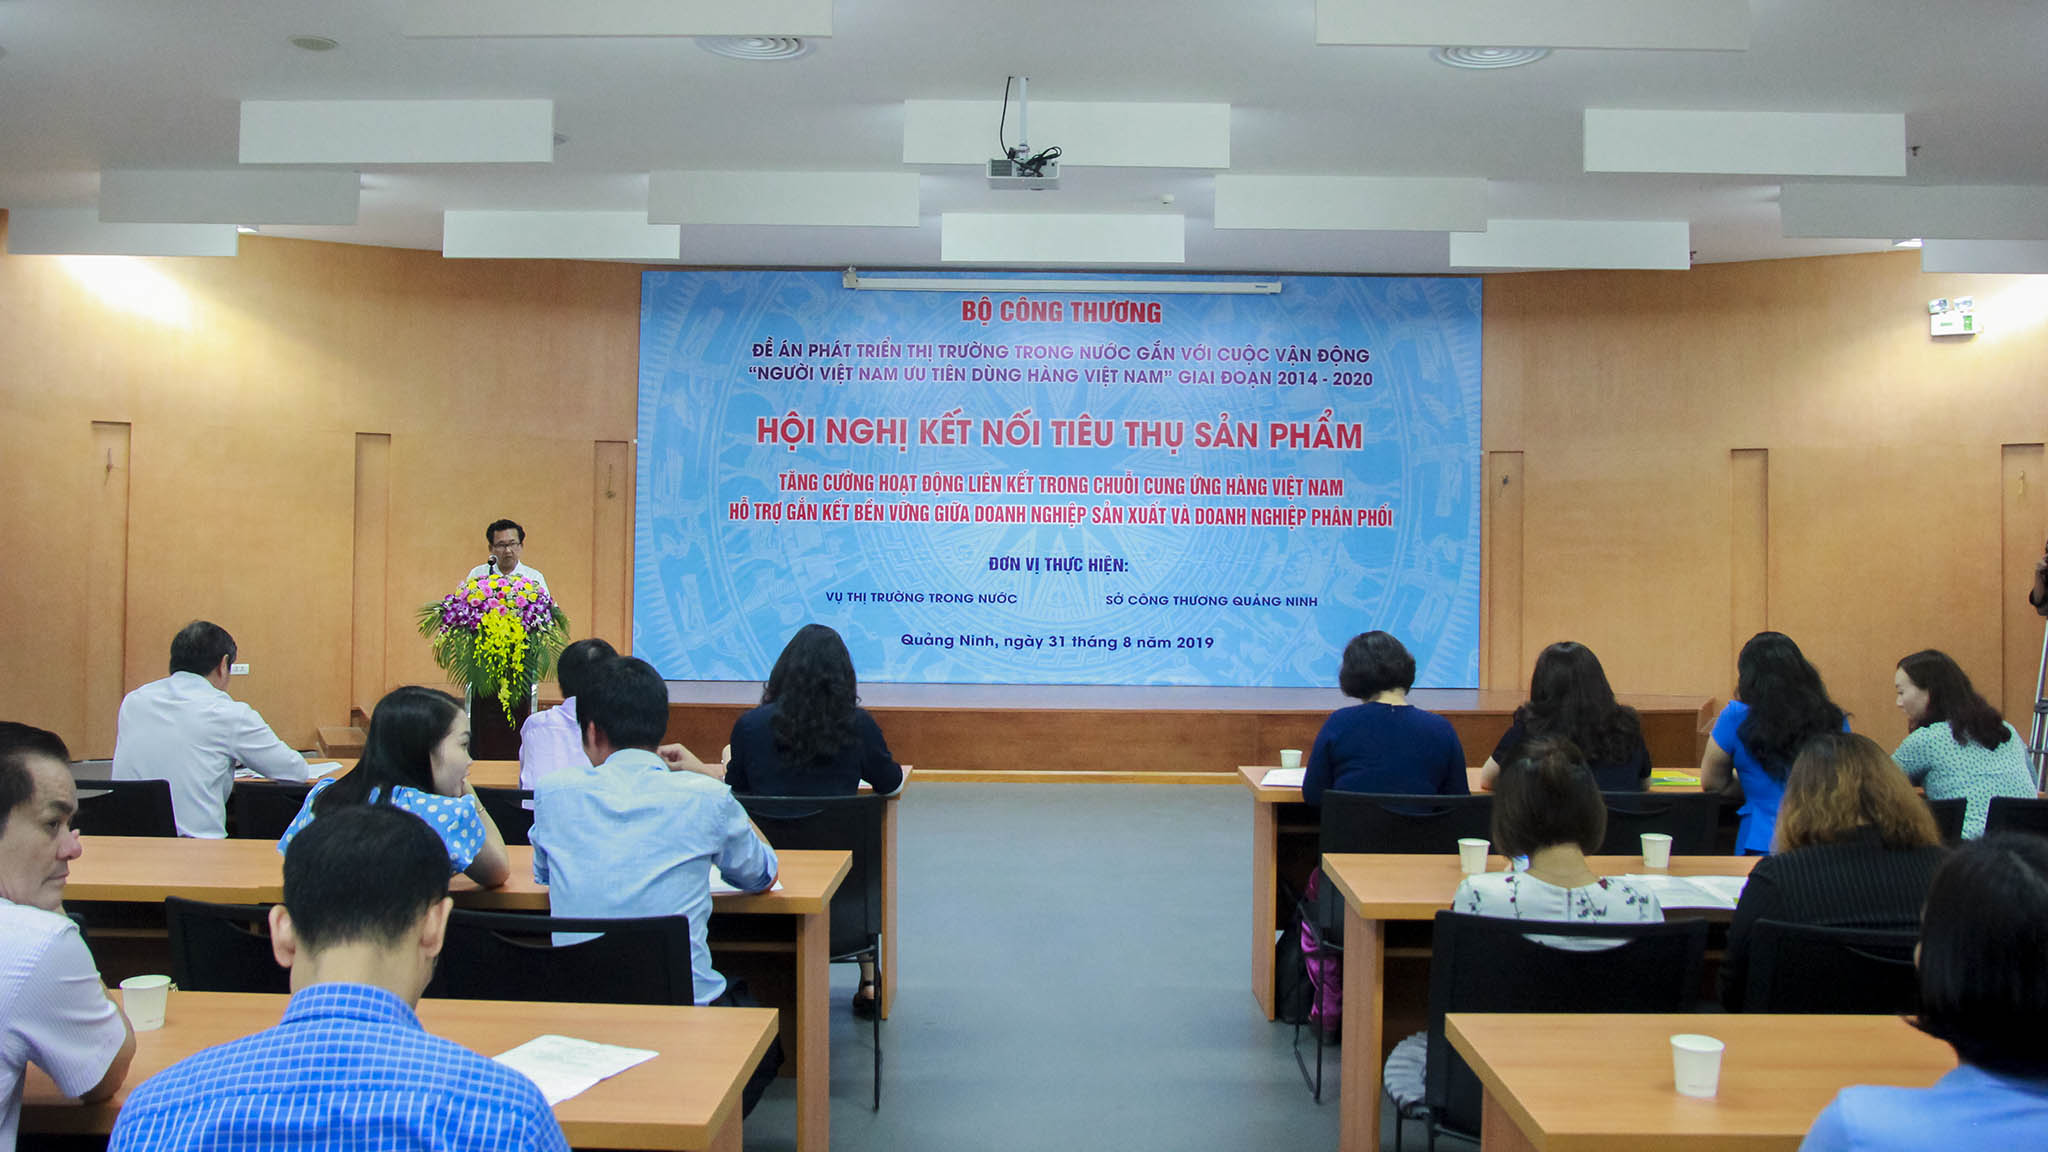 Hội nghị kết nối cung cầu Quảng Ninh 2019